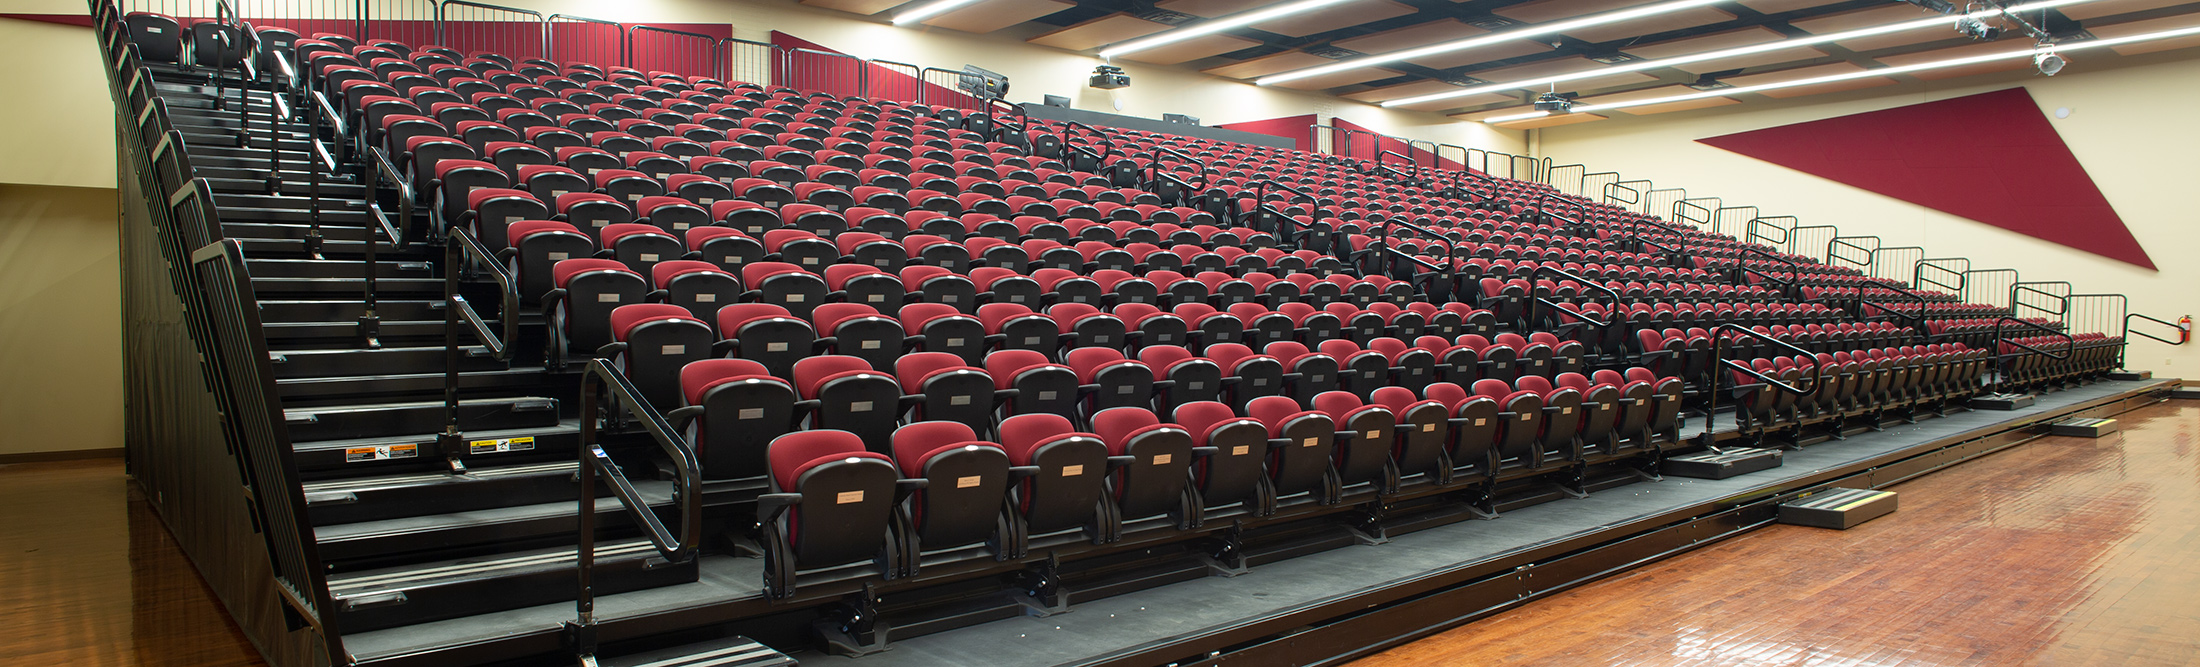 Elizabeth Seton High School telescopic auditorium seating